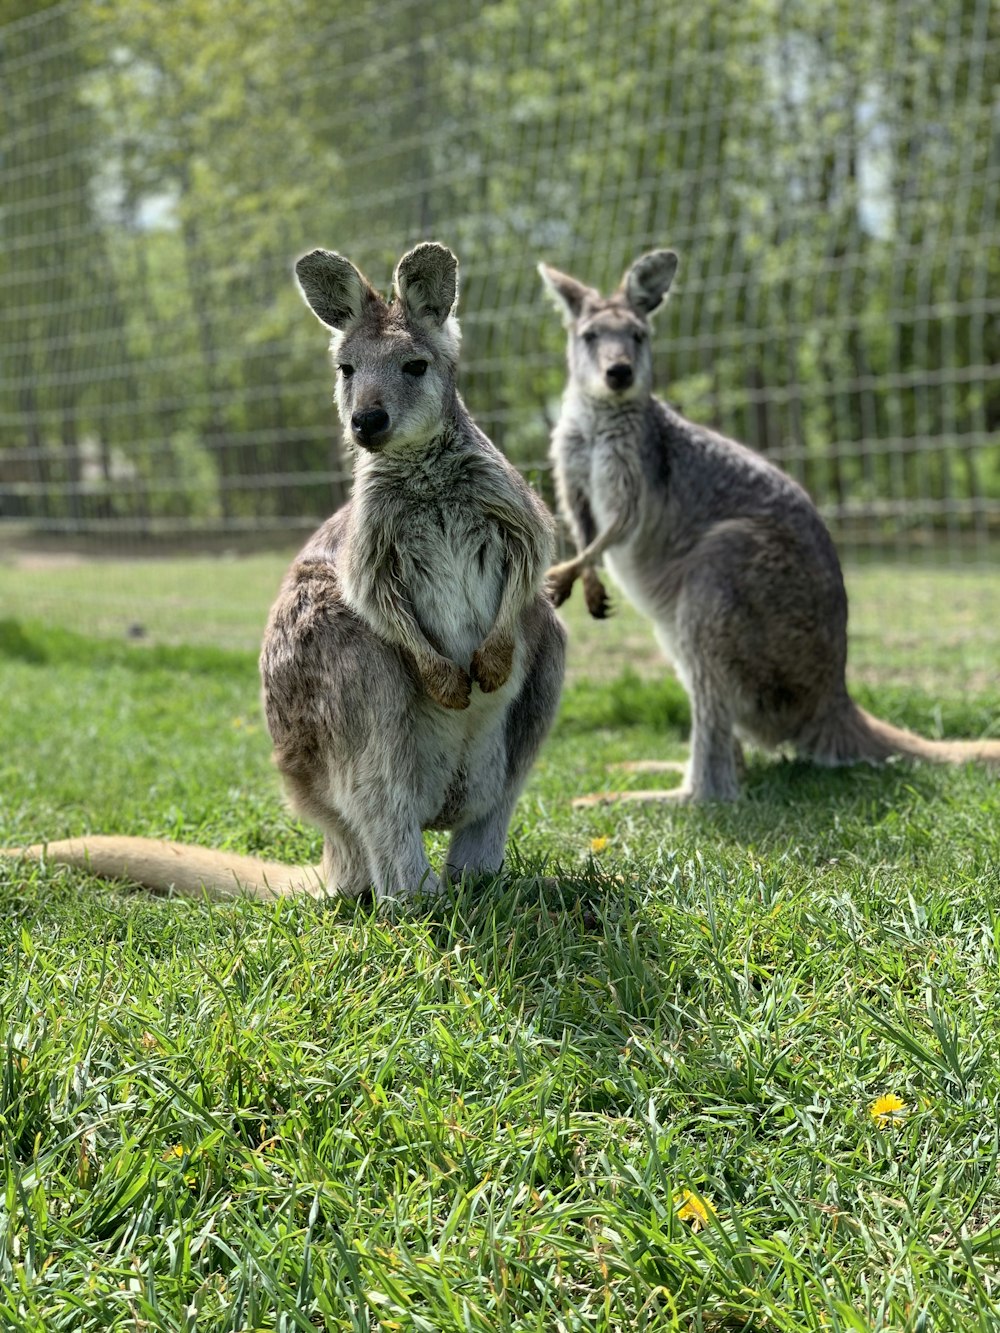 two kangaroos